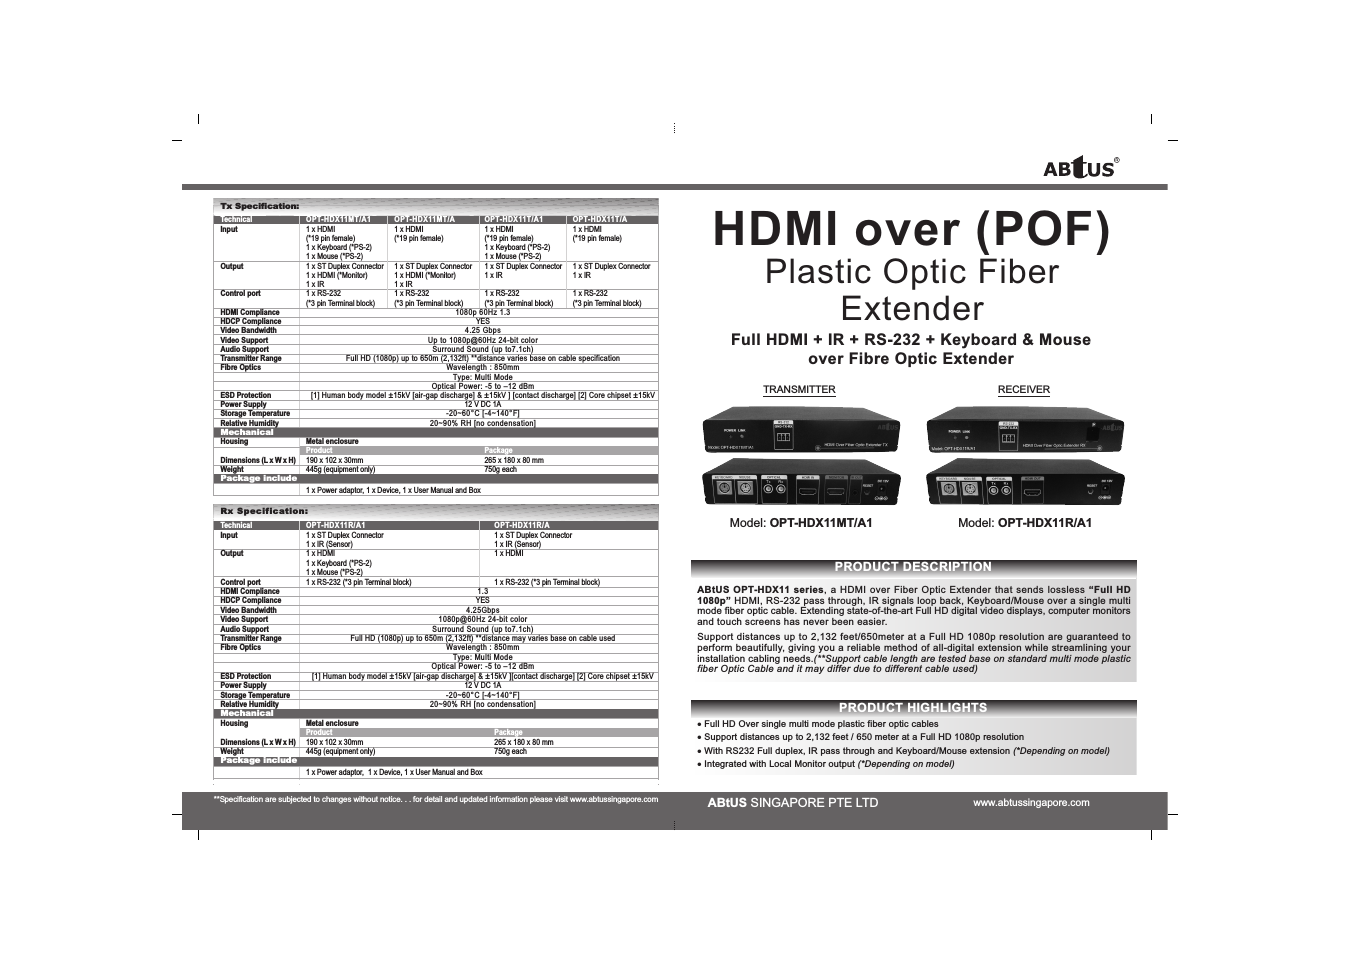 OPT-HDX11R/A1